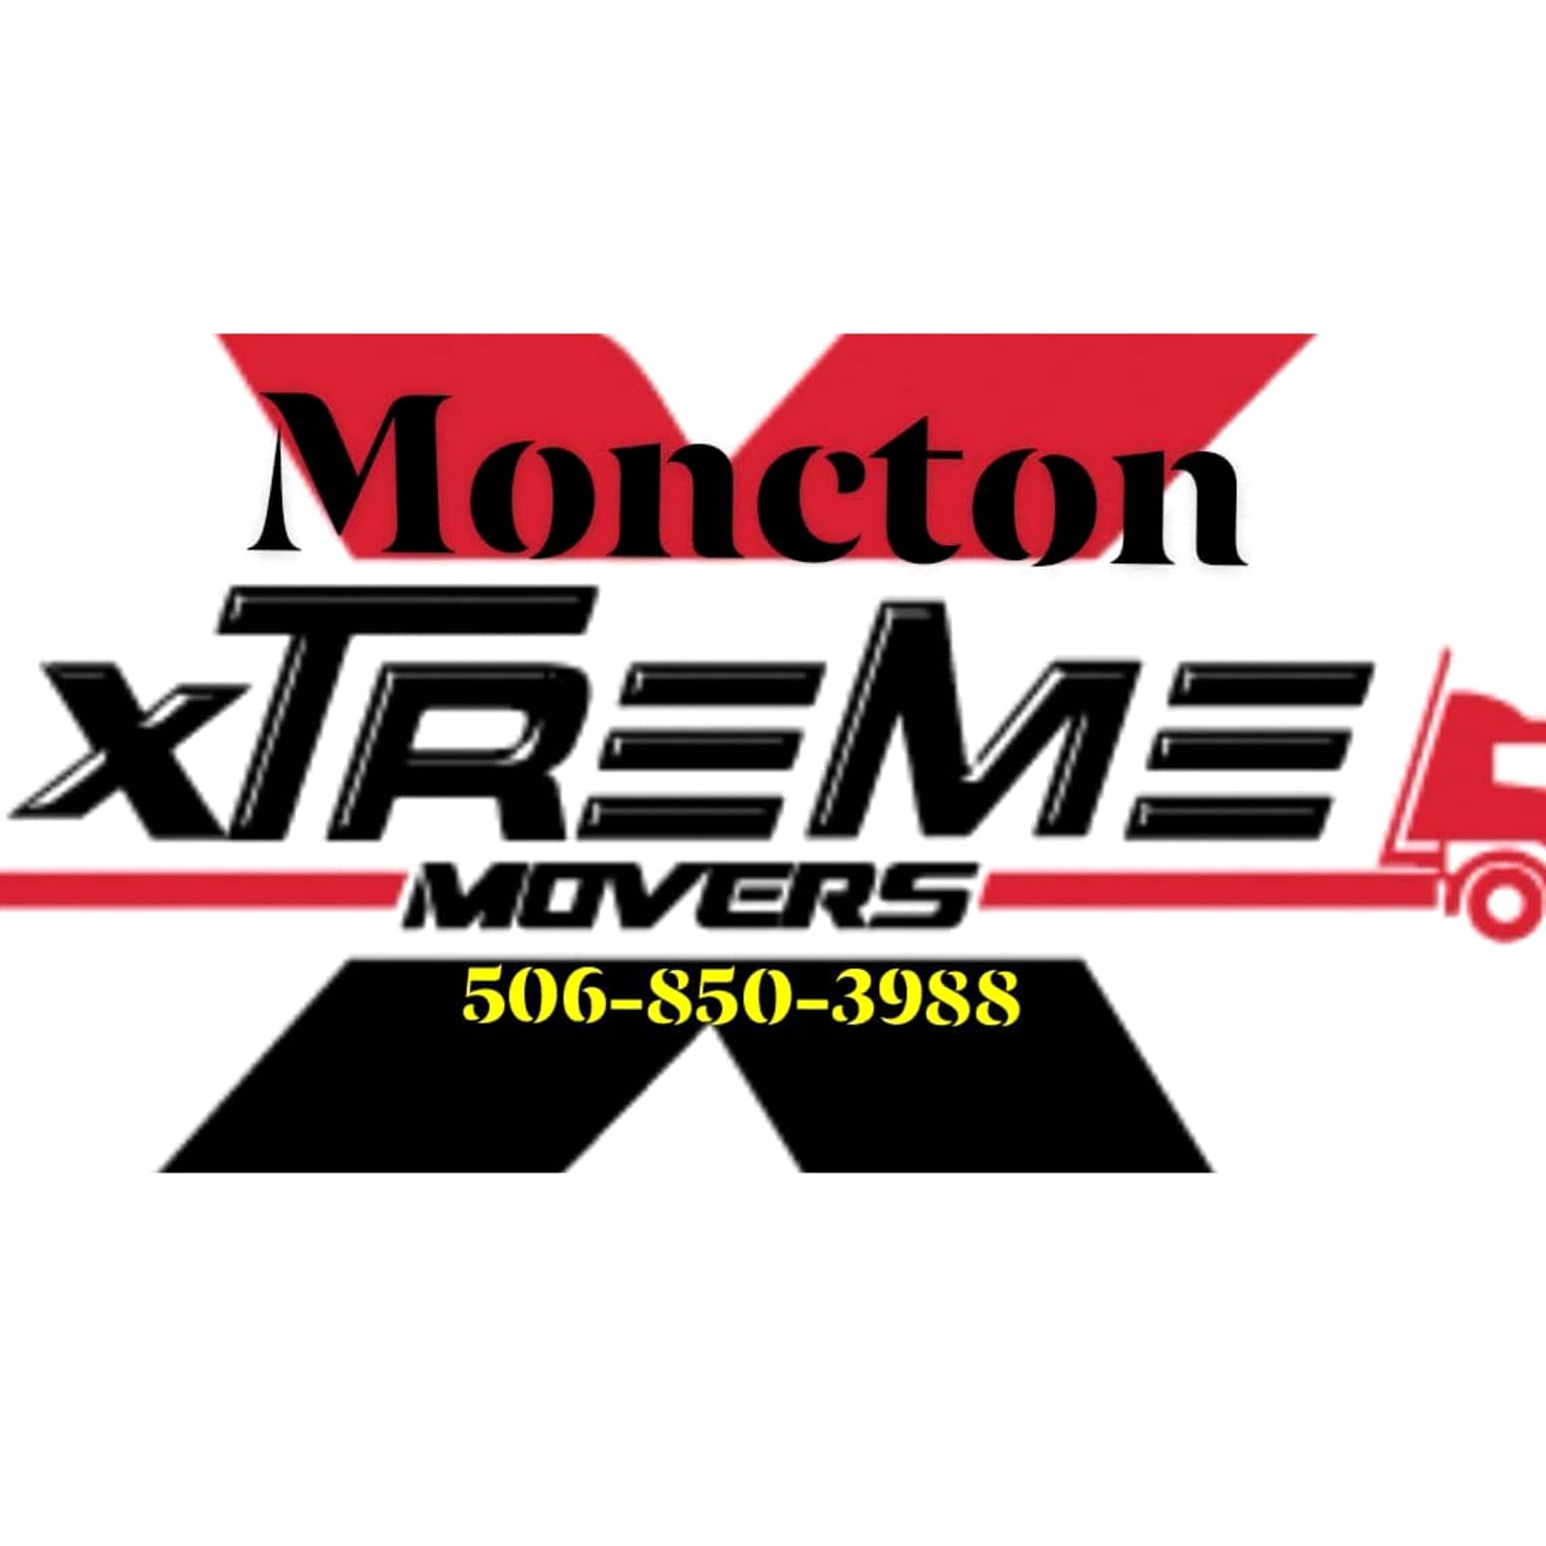 Moncton Xtreme Movers